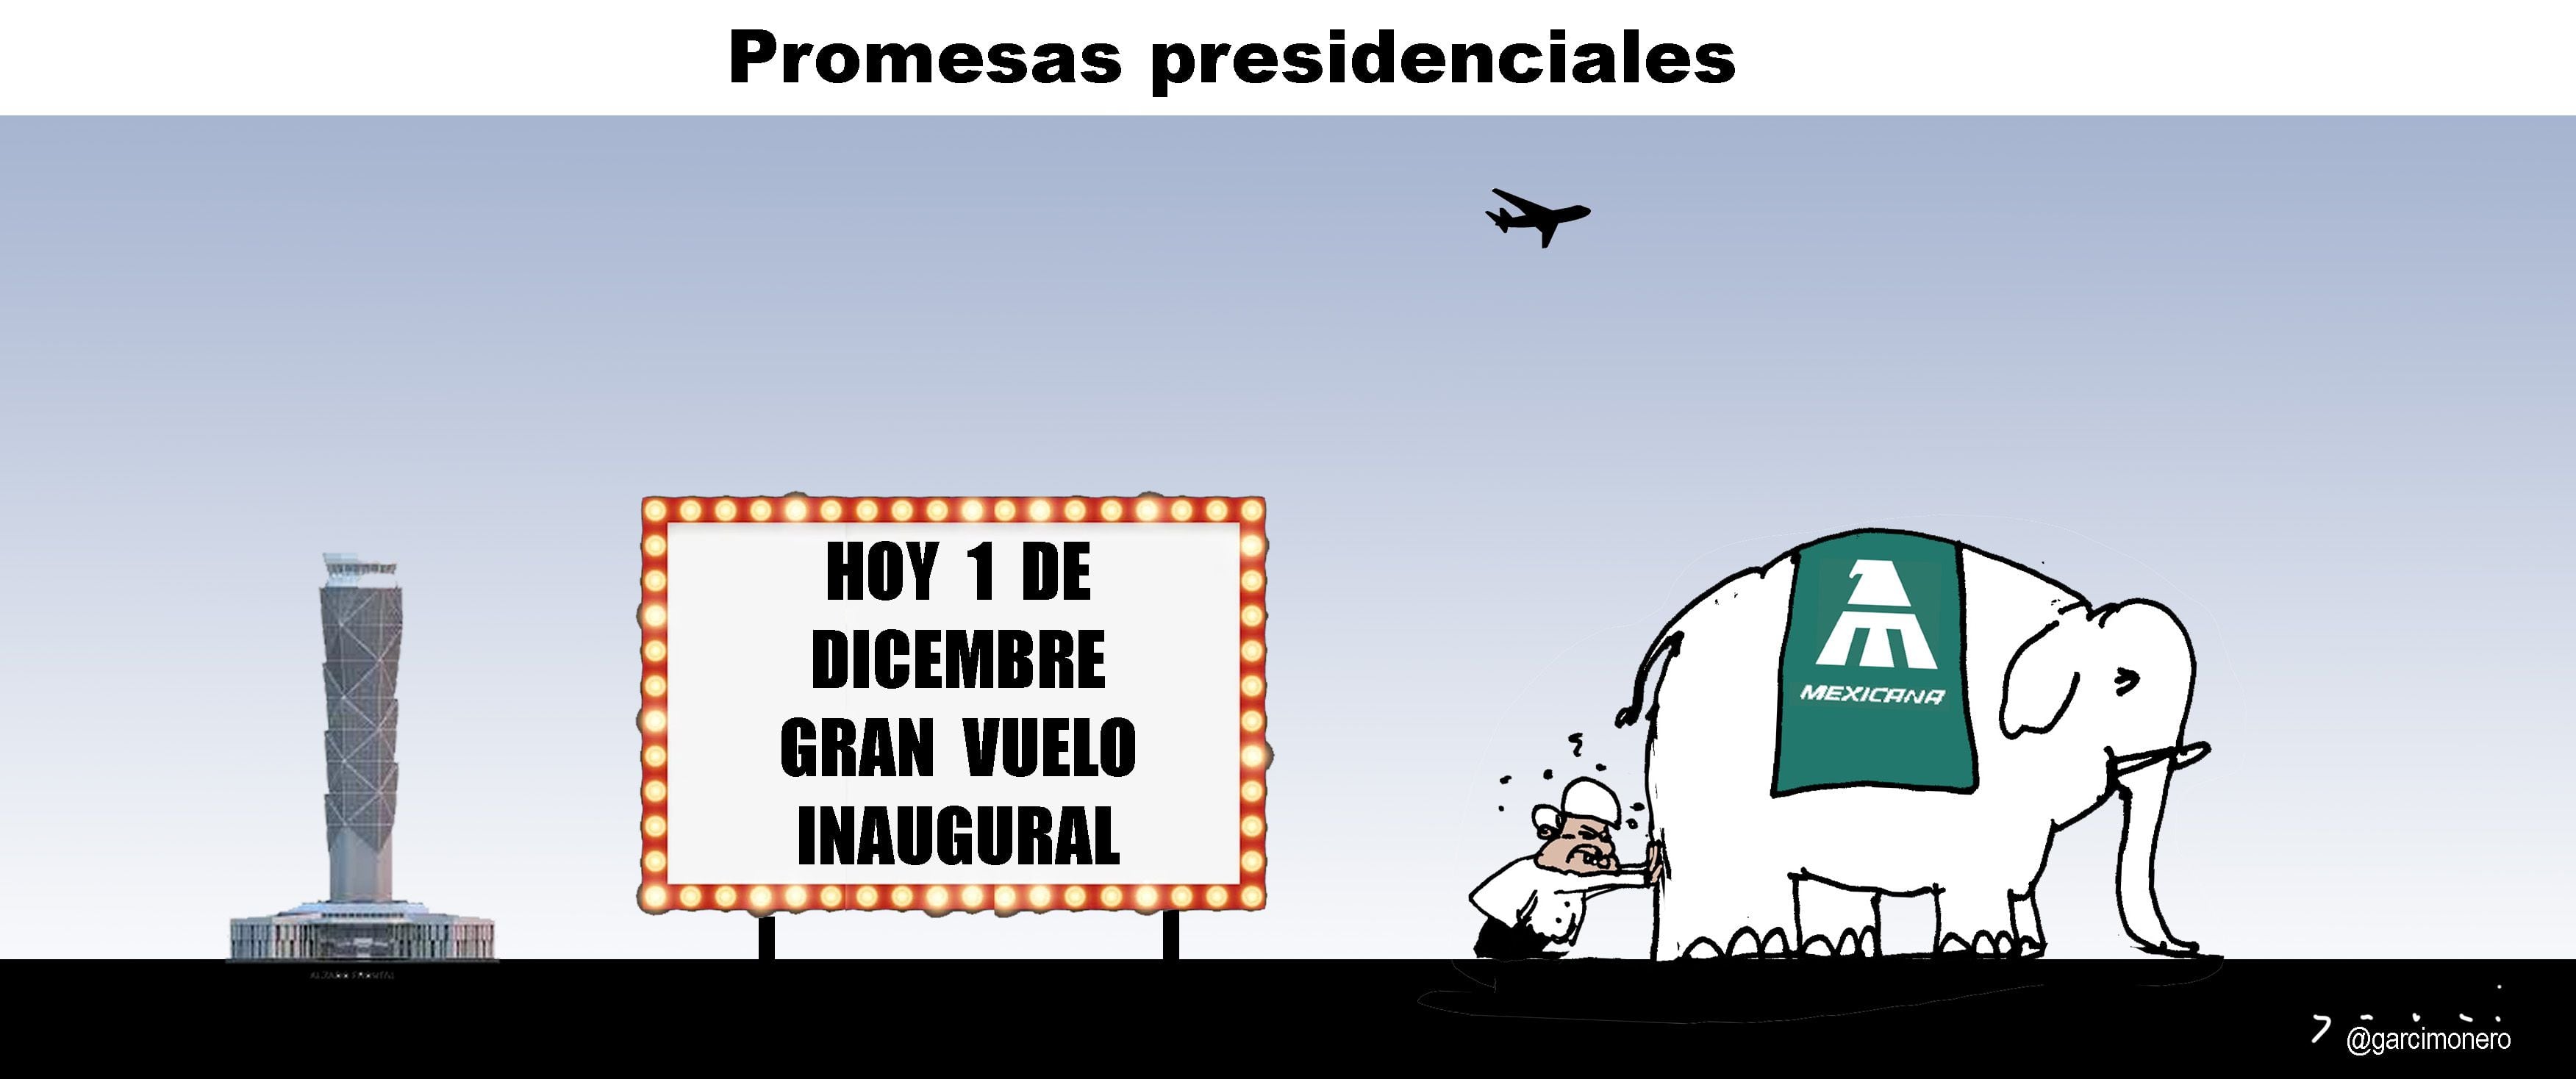 Promesas presidenciales